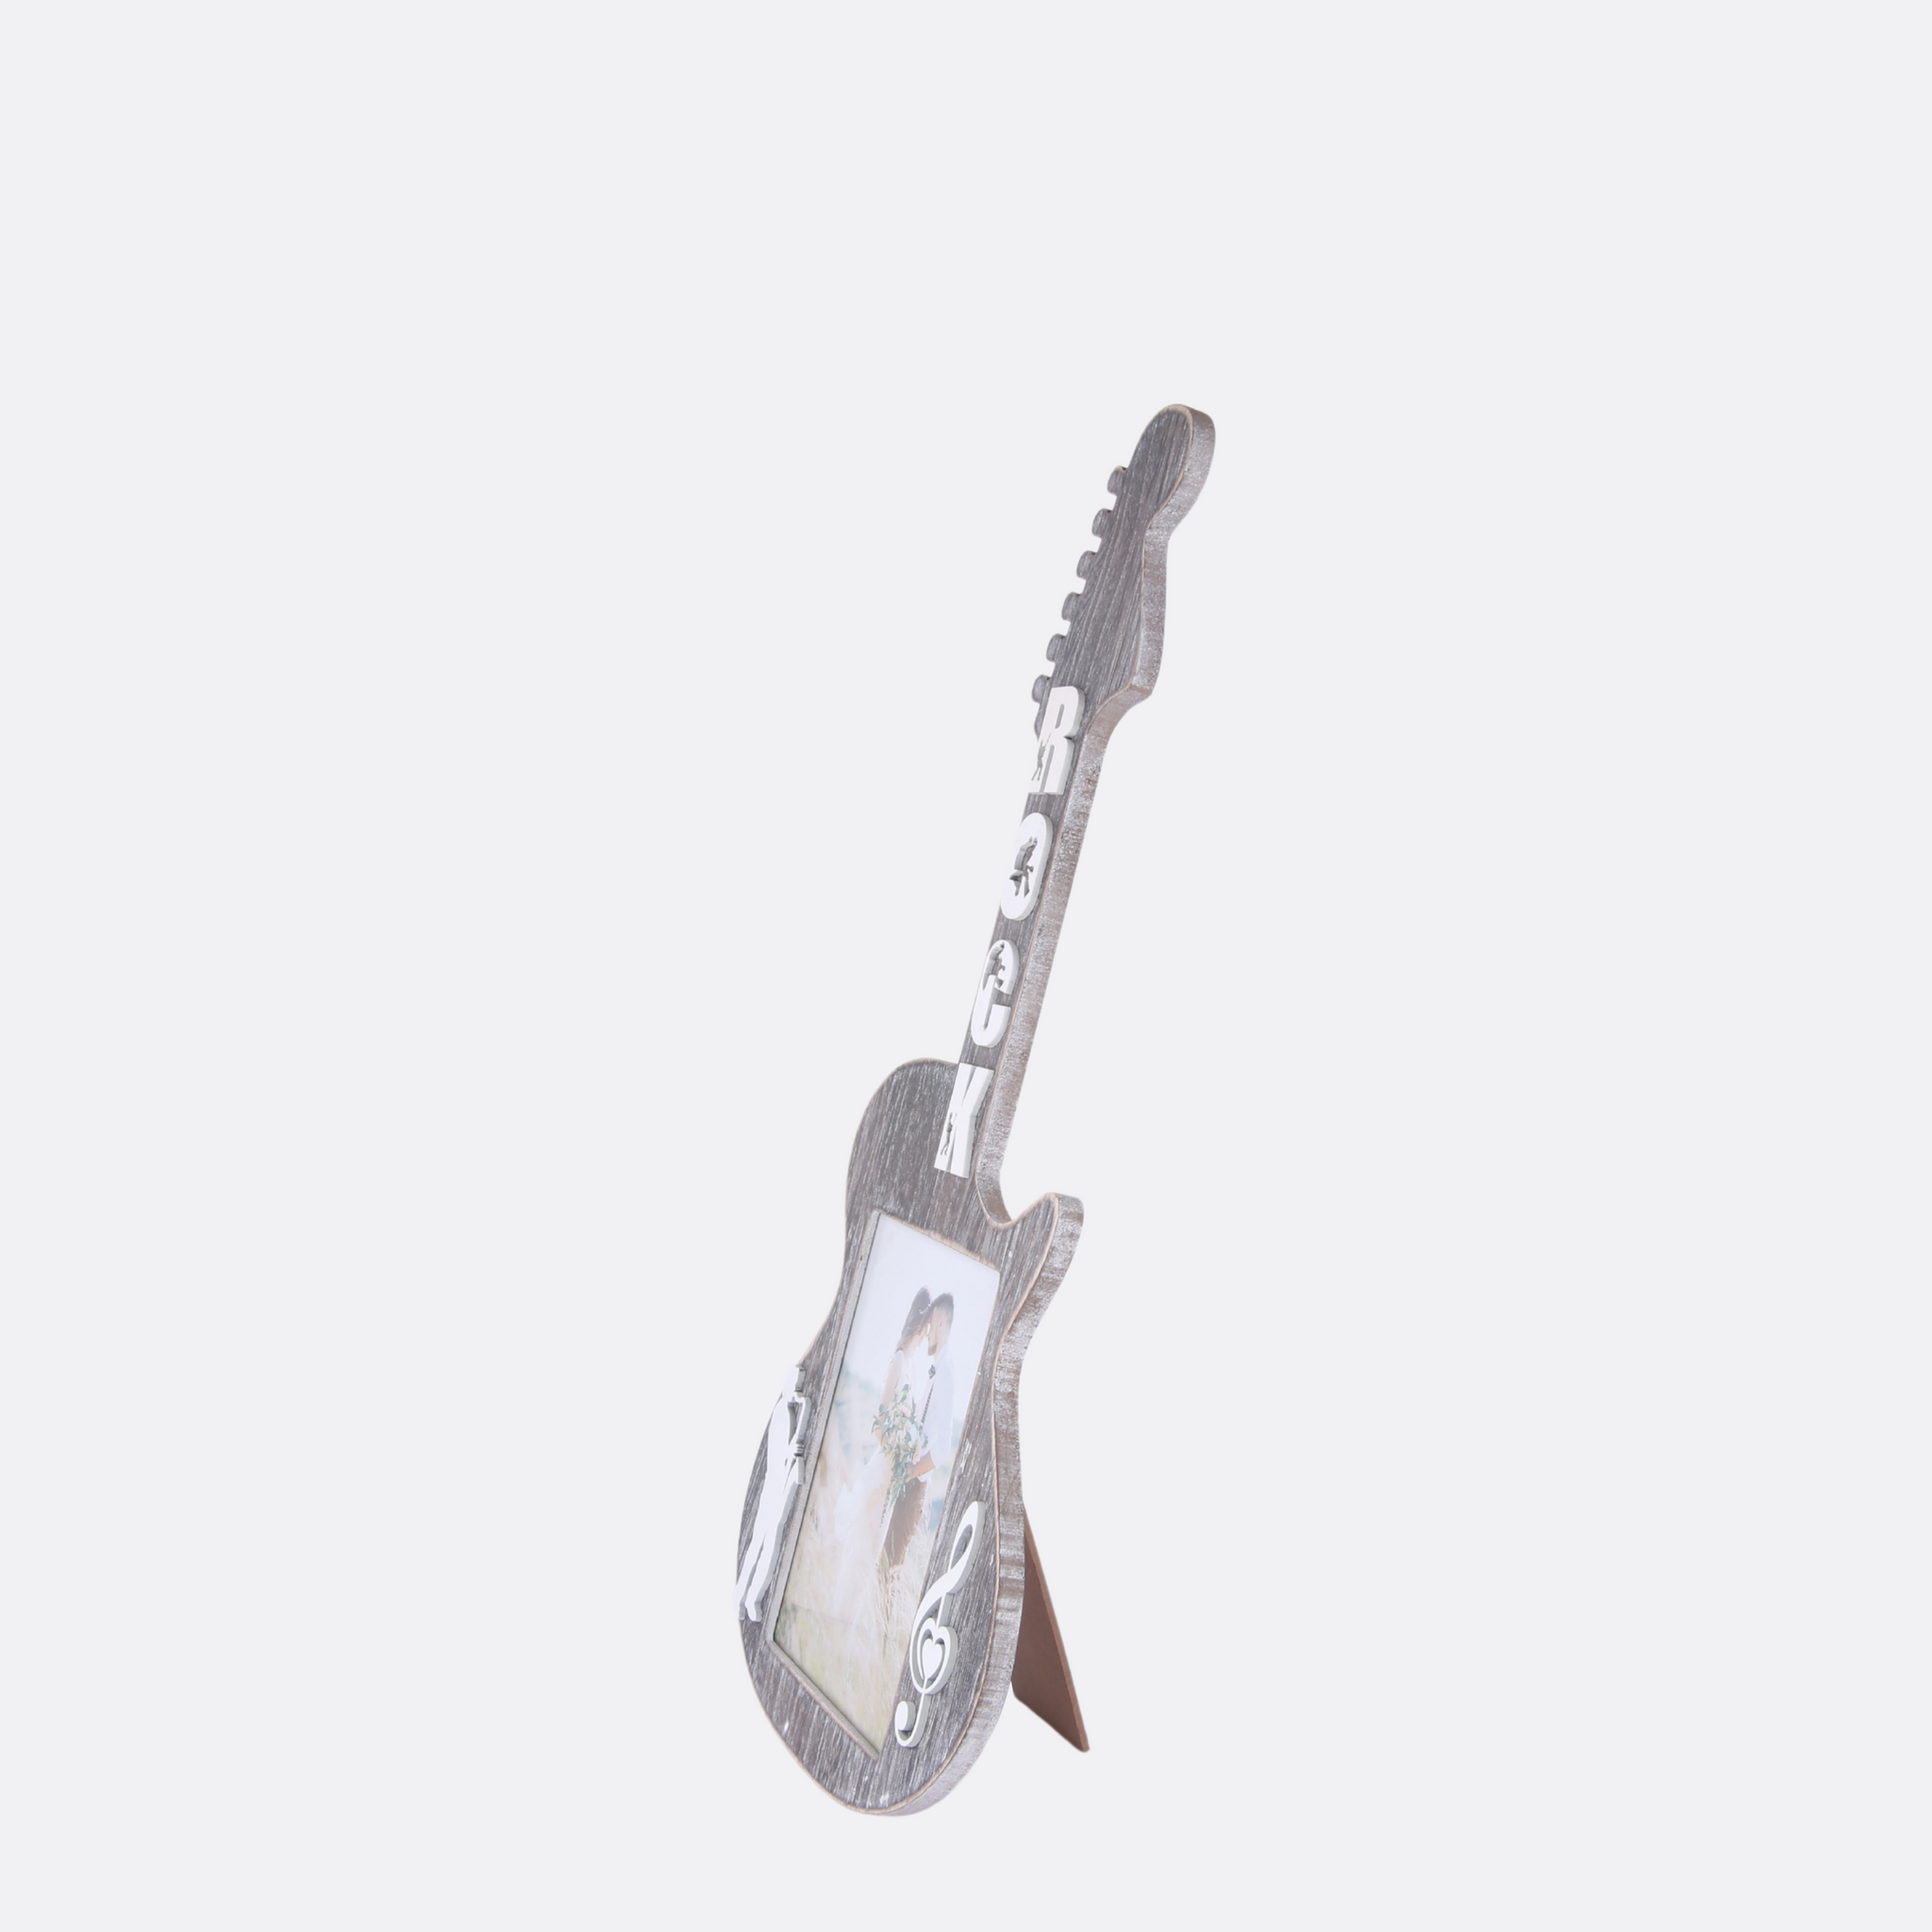 Guitar Photo Frame